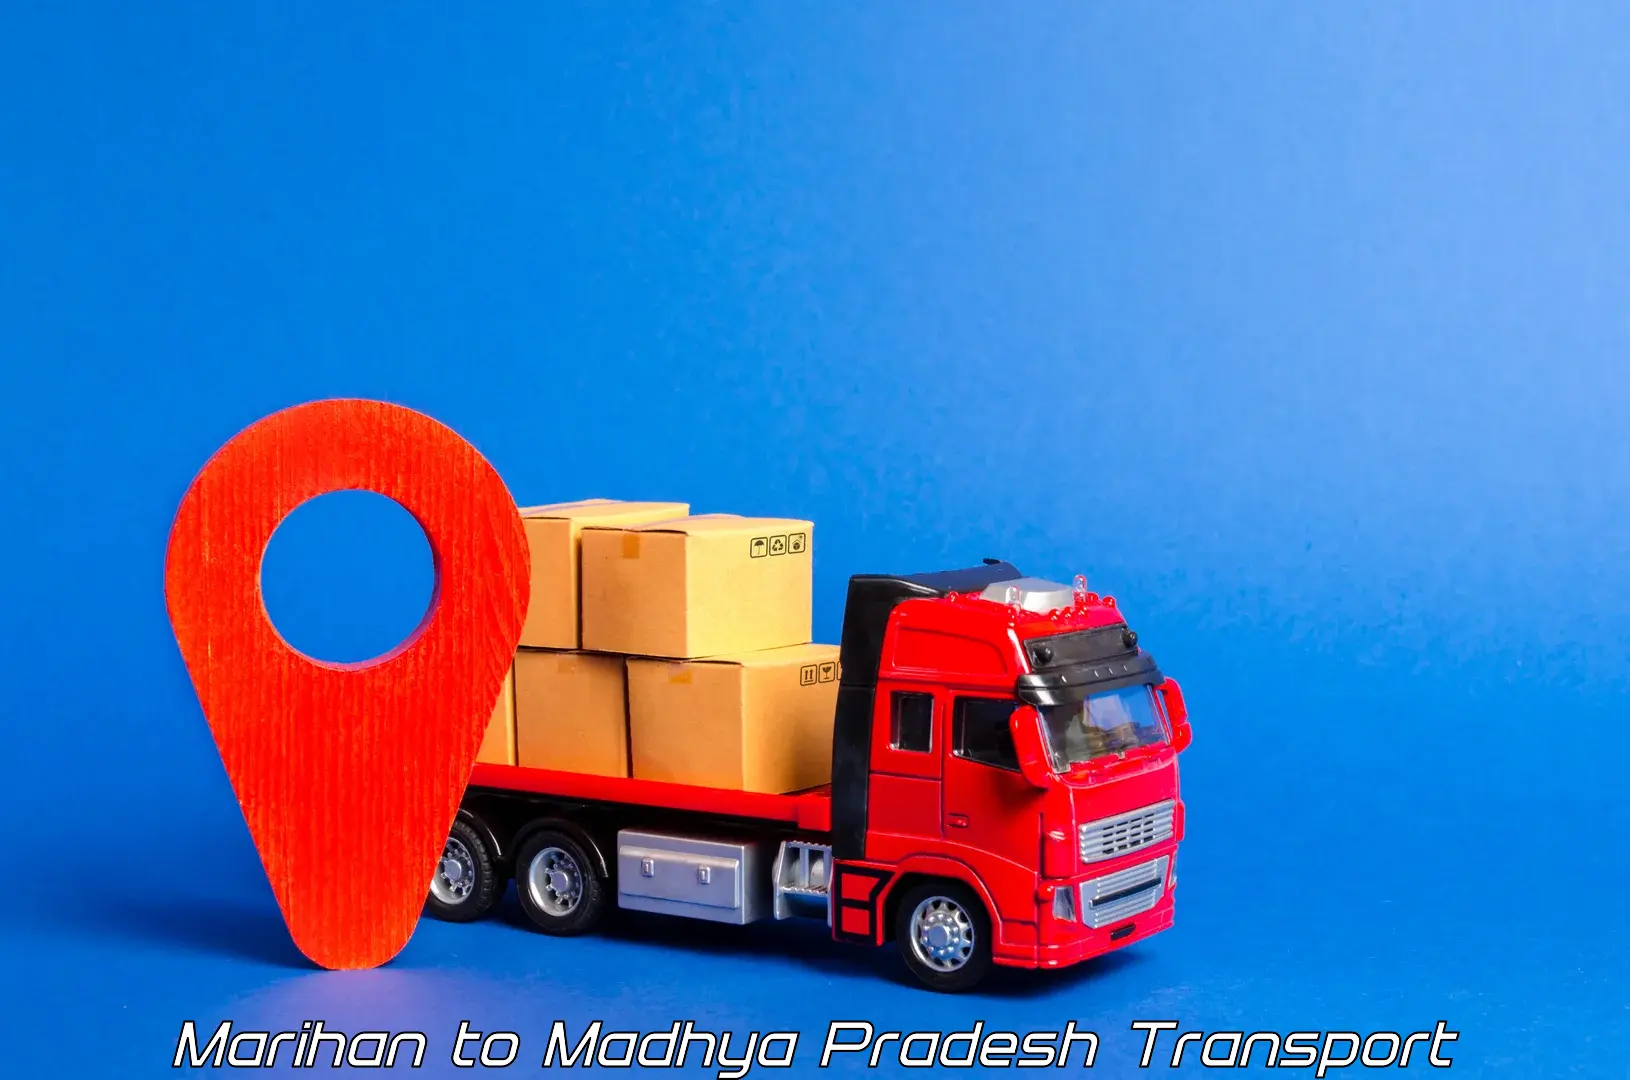 Vehicle transport services Marihan to Nepanagar